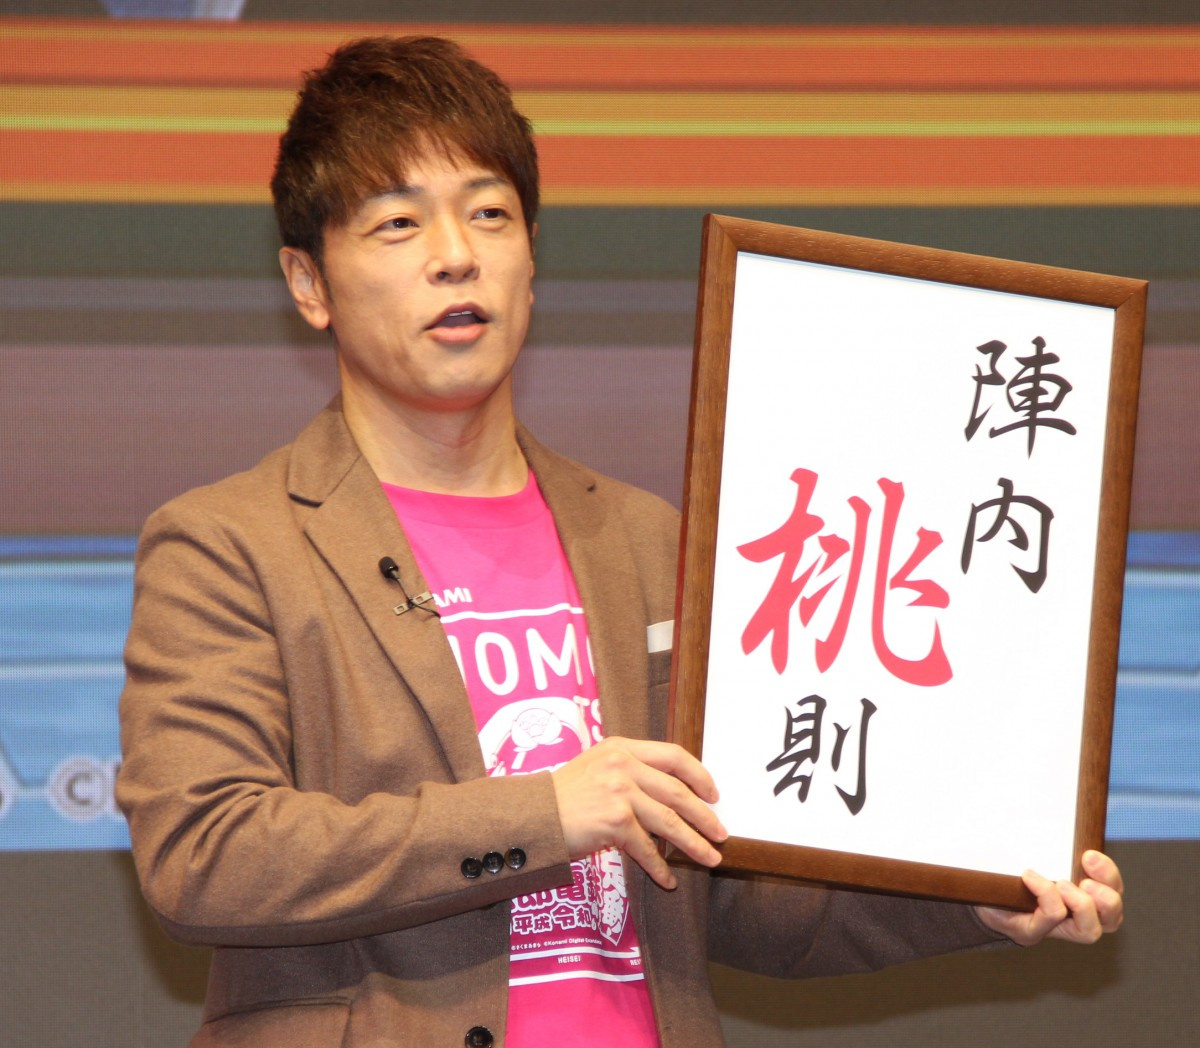 陣内智則 桃鉄 Pr大使就任で改名発表 コナミ公認で新ネタ21日解禁 Oricon News